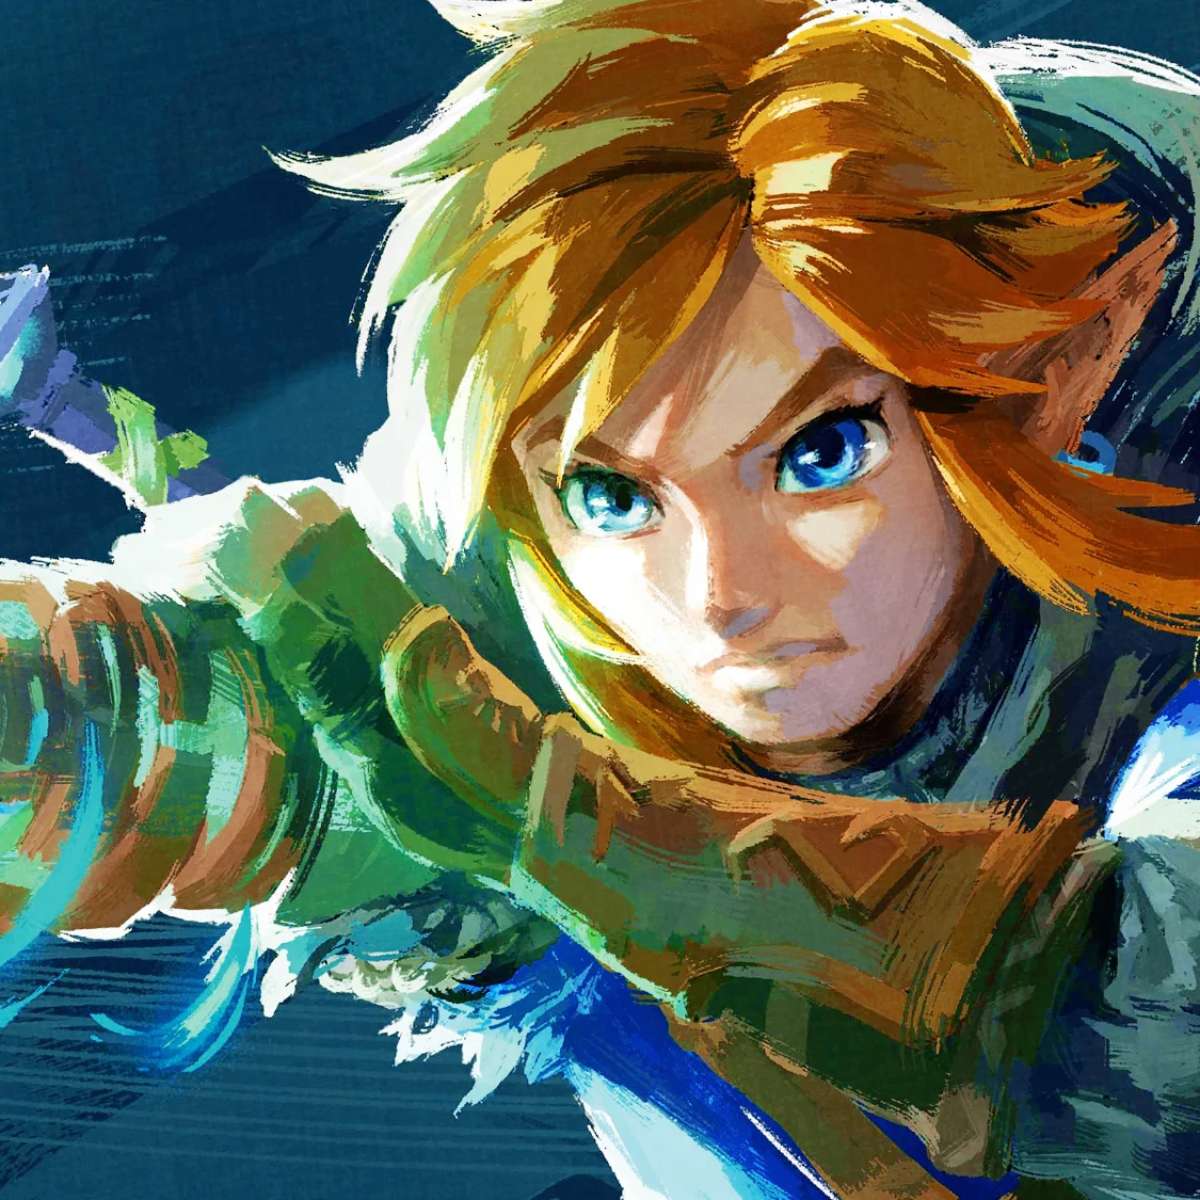 The Legend of Zelda Jogo Nintendo Switch, Lágrimas do Reino